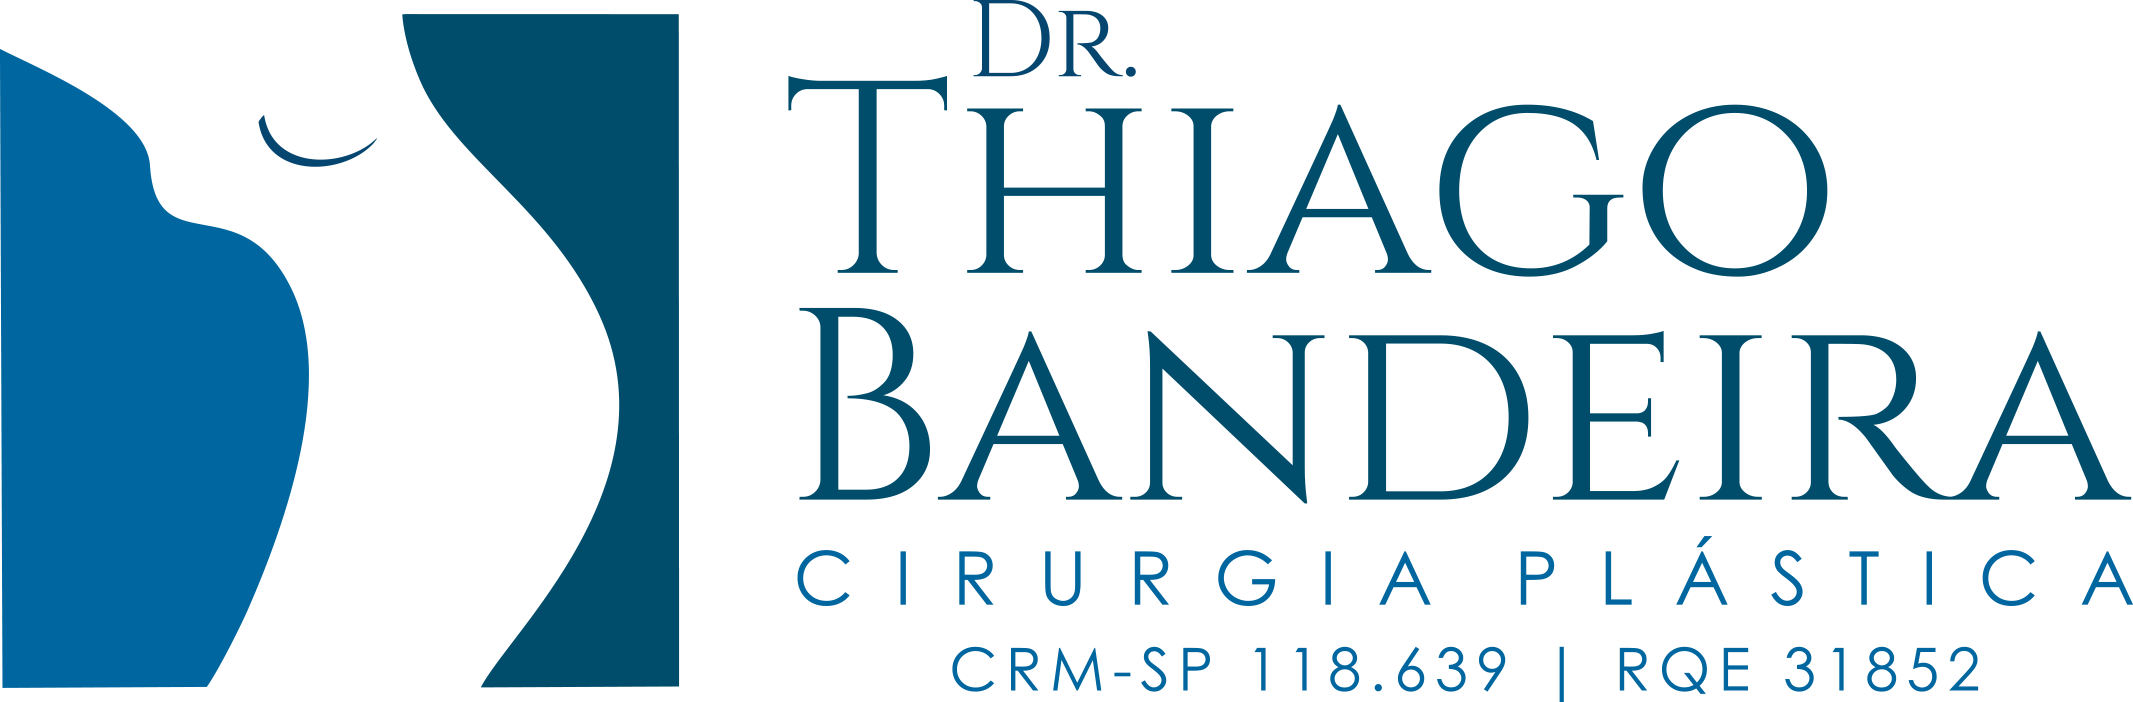 Logotipo com o icone de um nariz, e a inscrição: "DR. THIAGO BANDEIRA", "CIRURGIA PLASTICA", crm-sp : 118.639 | RQE: 31852